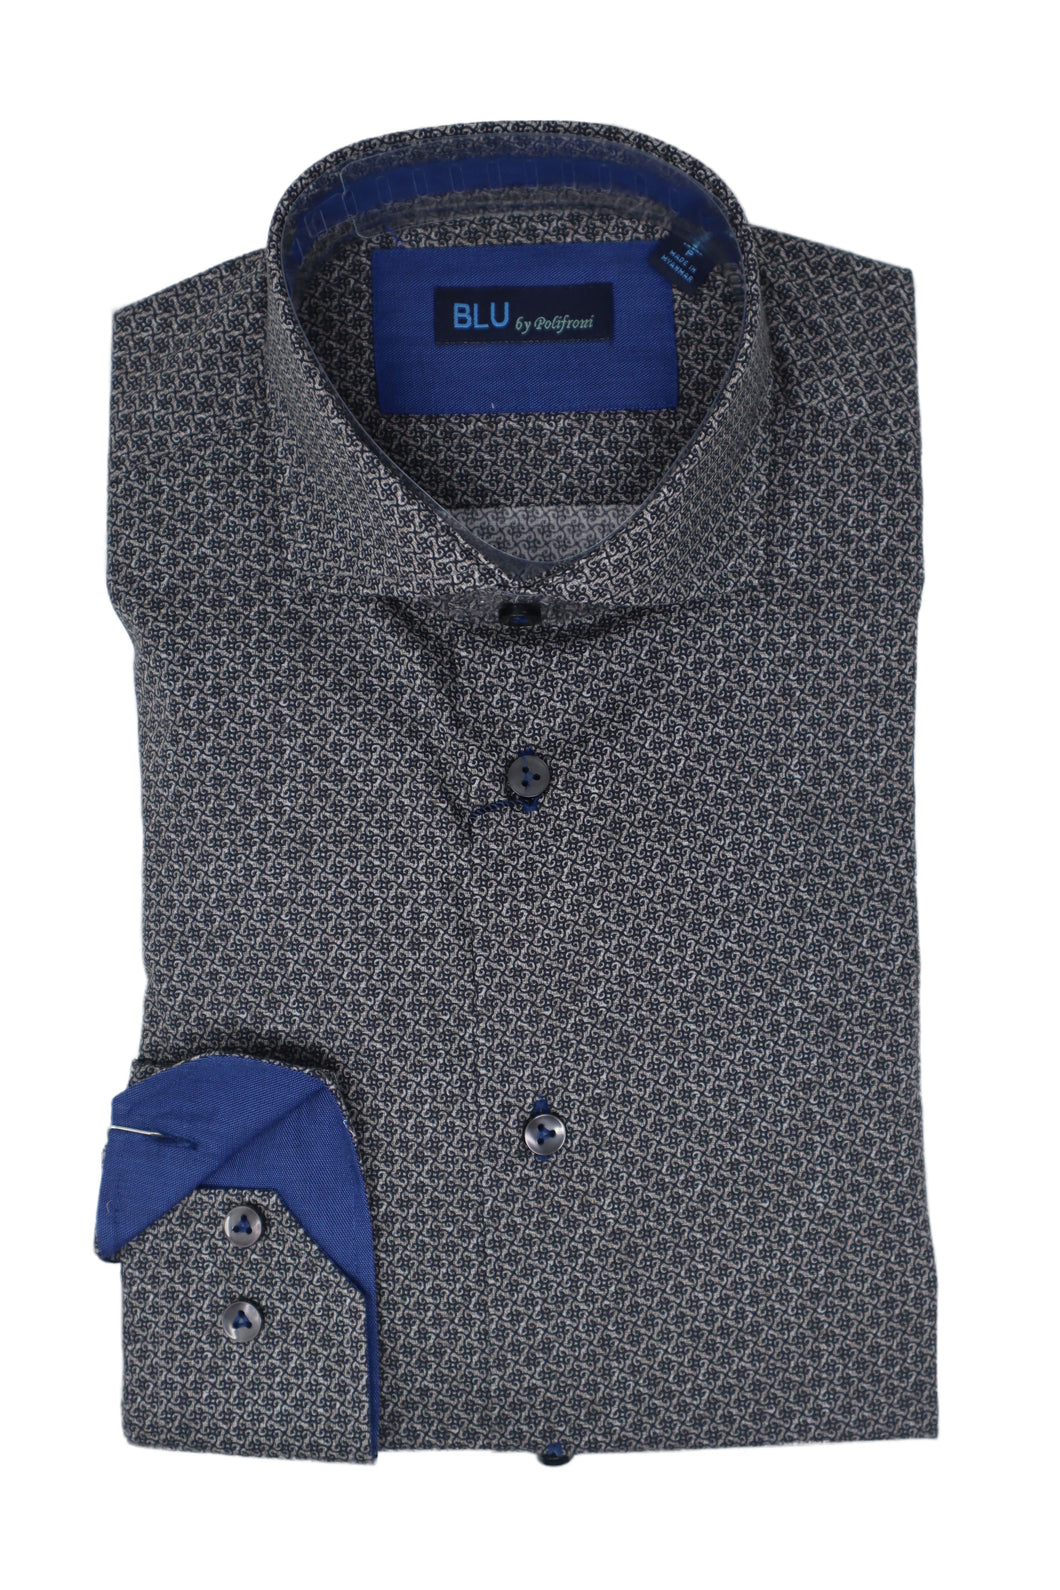 Men's | Blu by Polifroni | 2249663 | Sport Shirt | Brown / Black Pattern